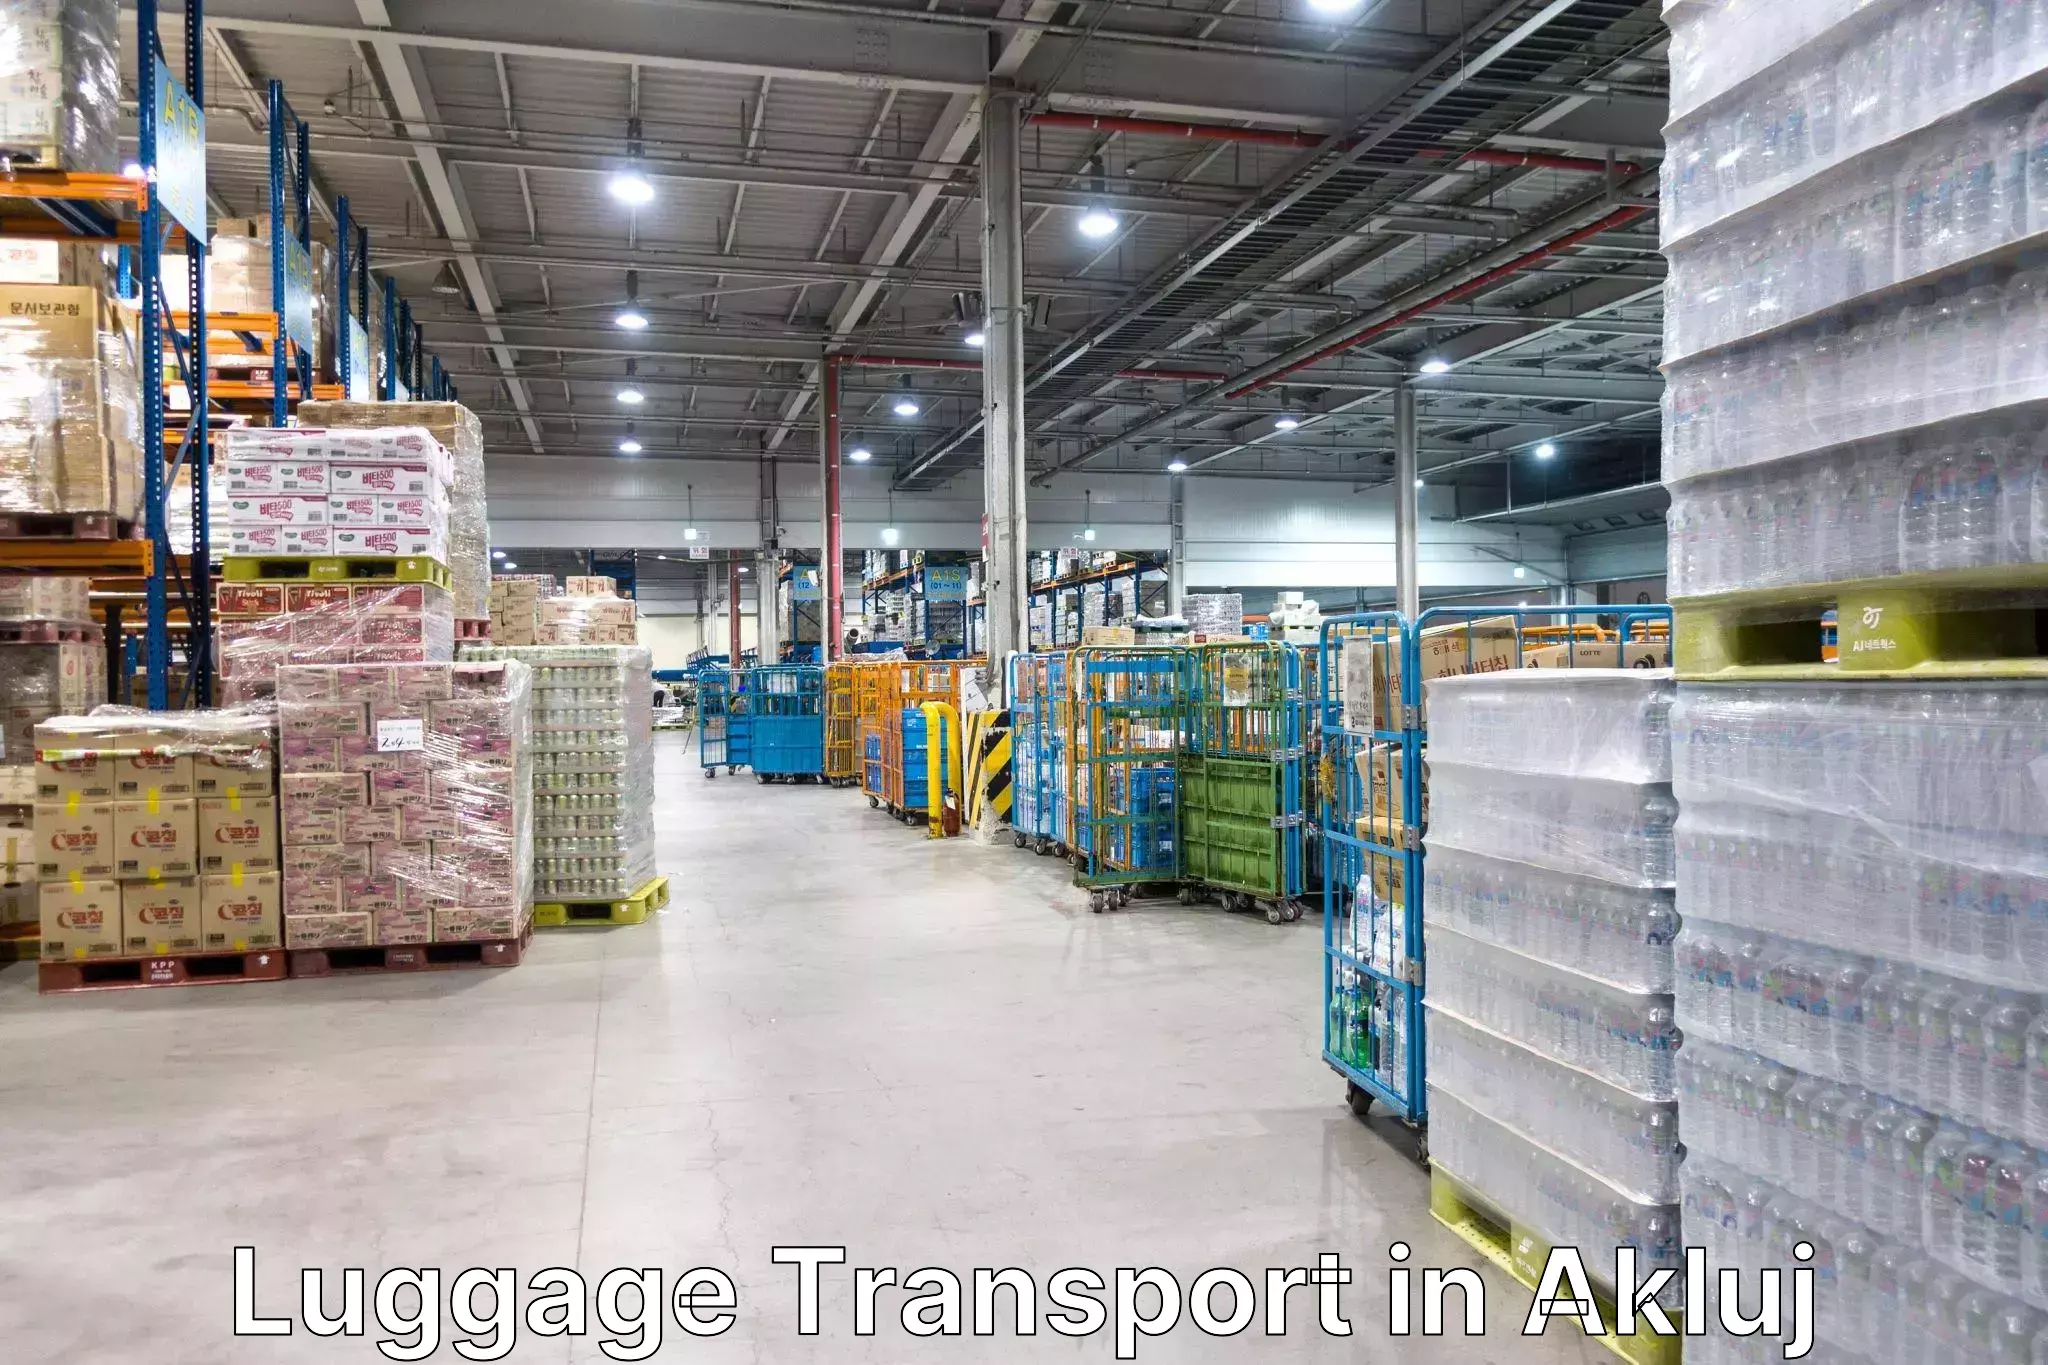 Urban luggage shipping in Akluj